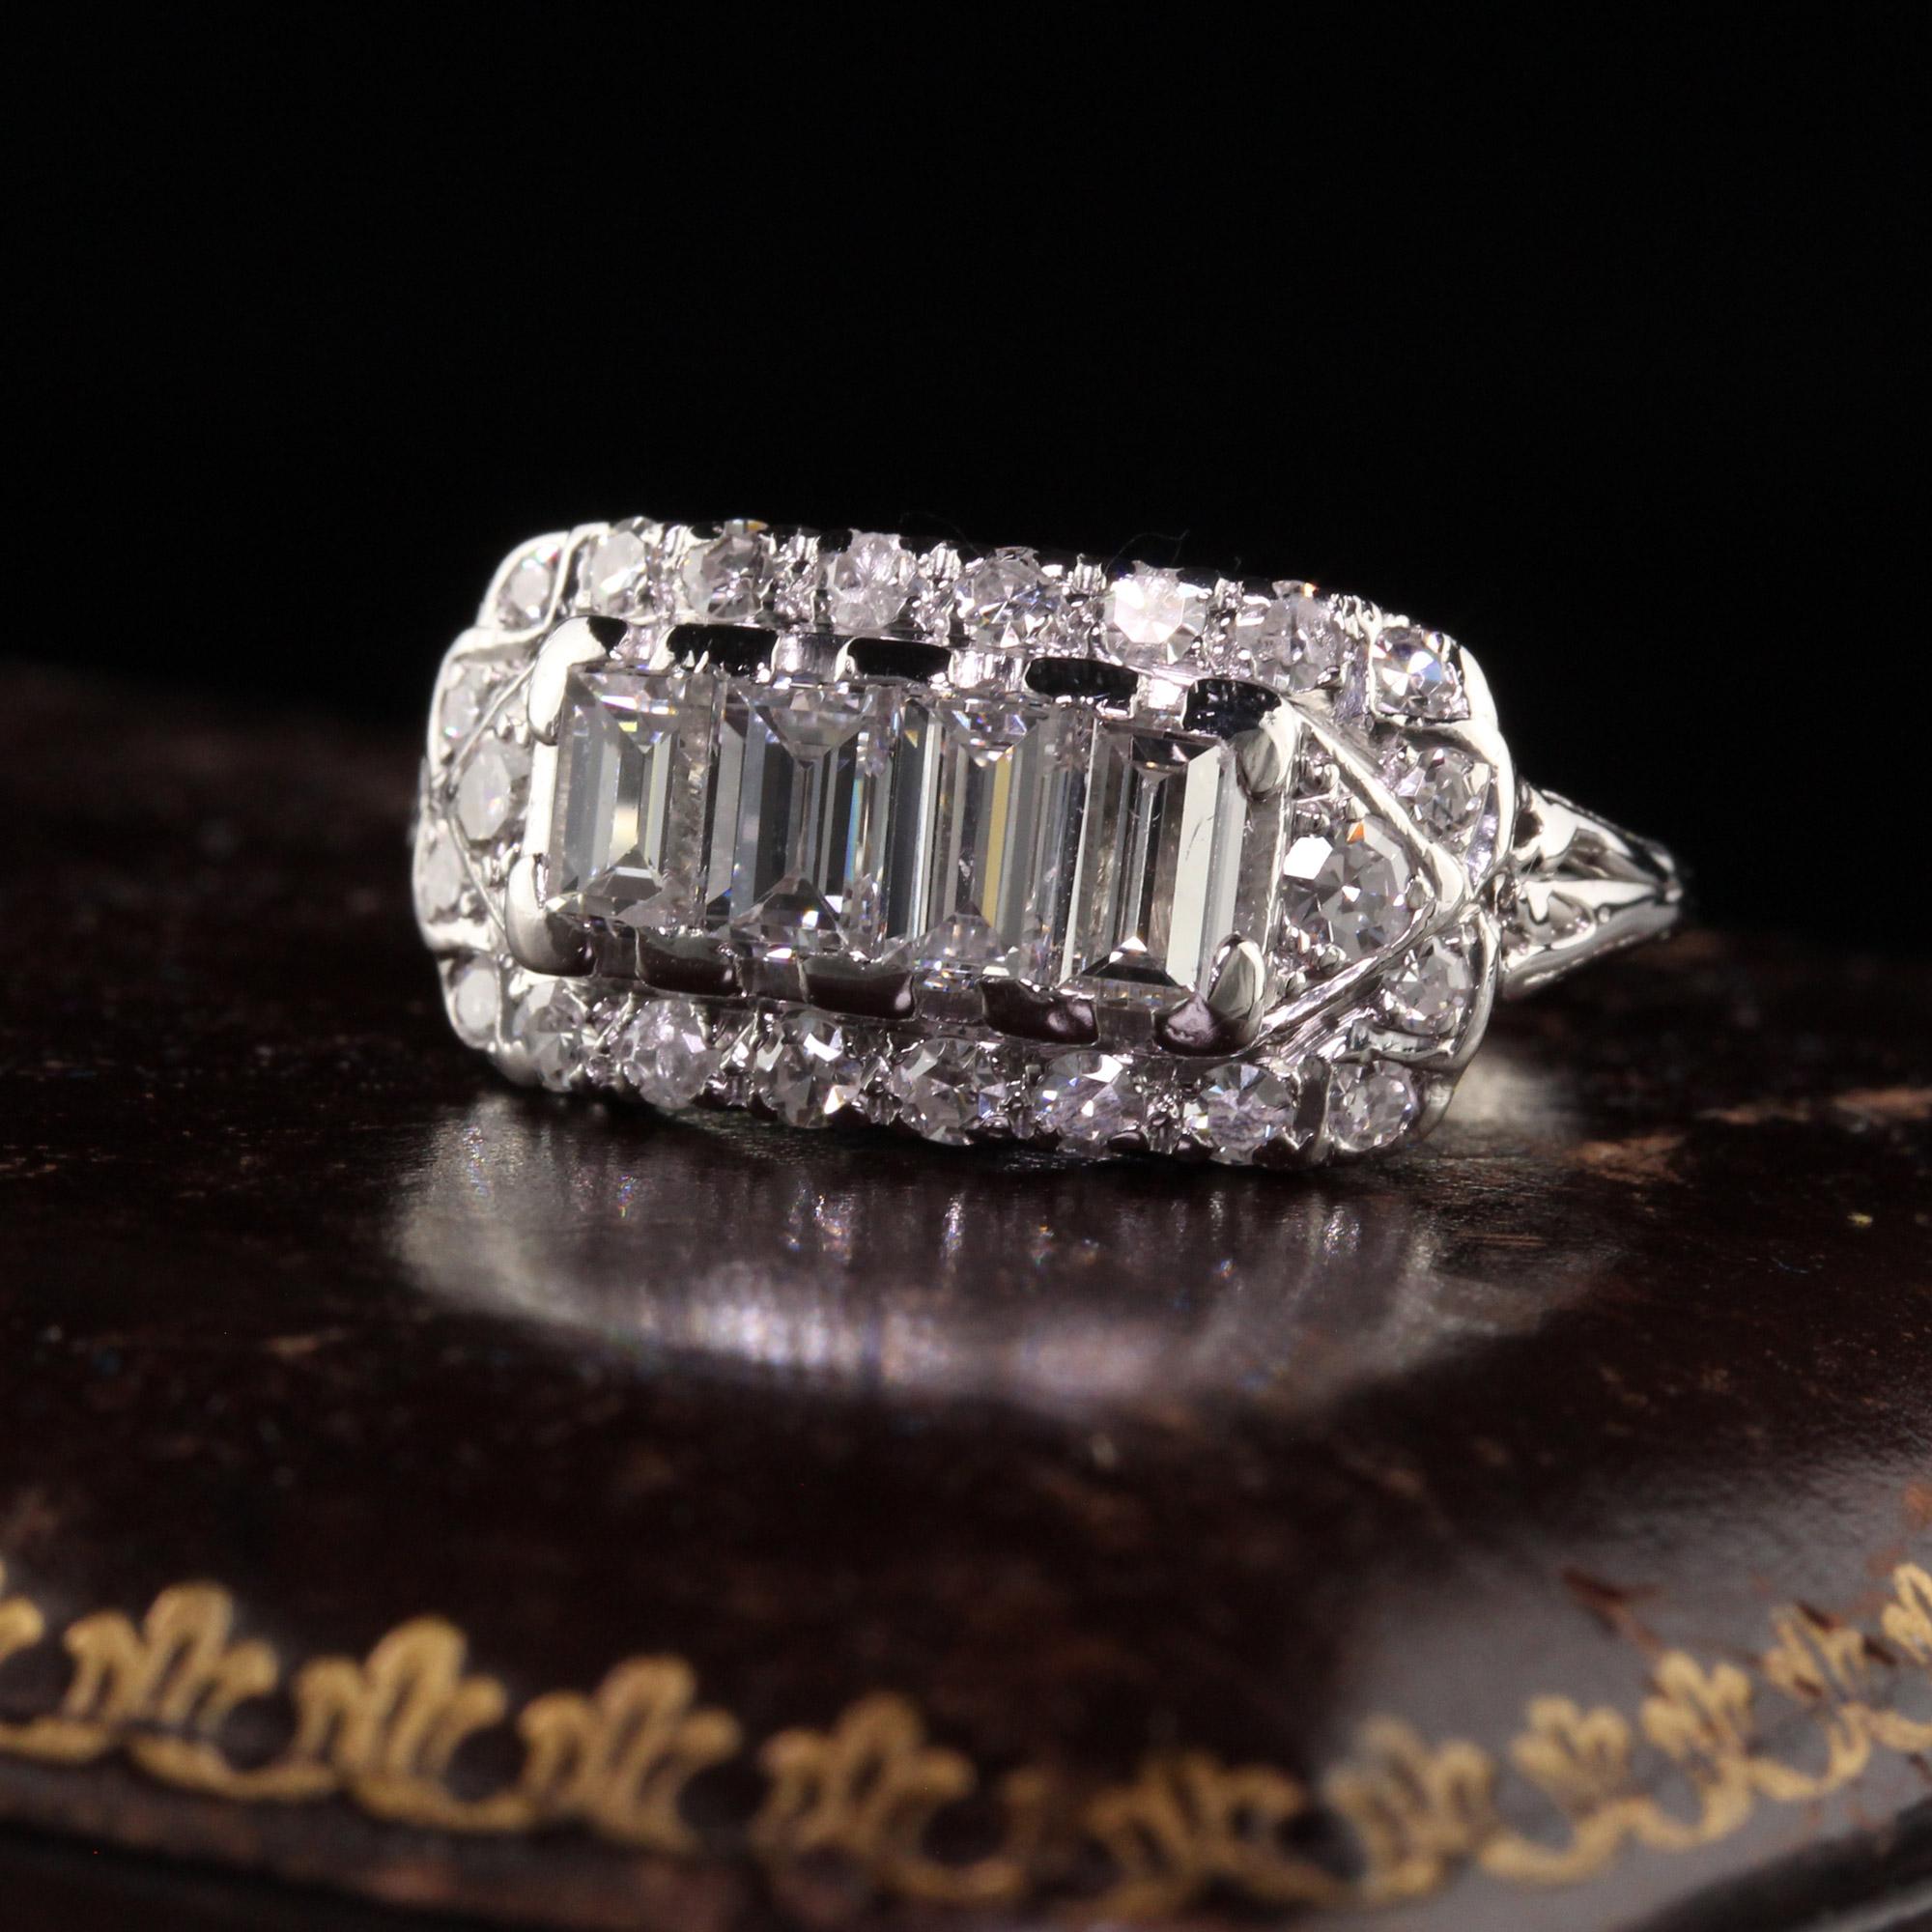 Schöne antike Art Deco 18K Weißgold Old Cut Diamond Baguette Ring. Dieser schöne Ring ist aus 18 Karat Weißgold gefertigt. In der Mitte des Rings befinden sich große Diamantbaguettes, die von Diamanten im Einzelschliff umgeben sind. Der Ring ist in